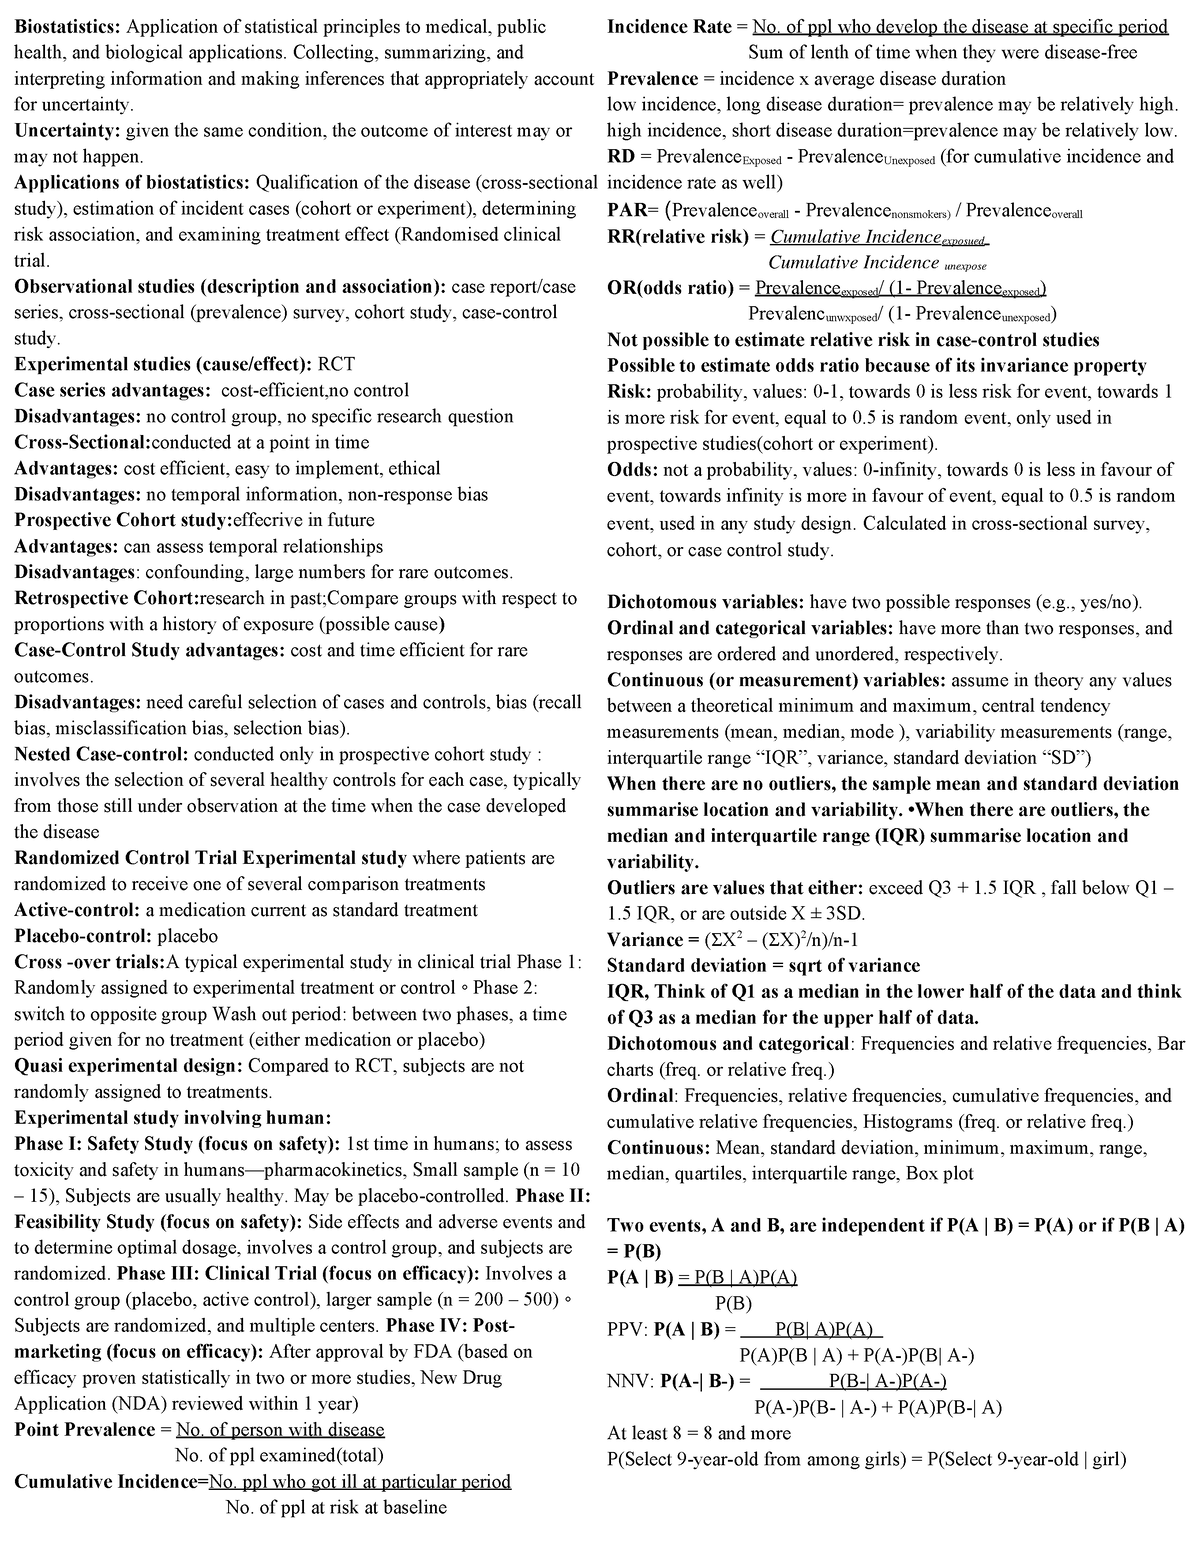 HLSC 2P07 Cheat Sheet - Summary Biostatistics I - Biostatistics ...